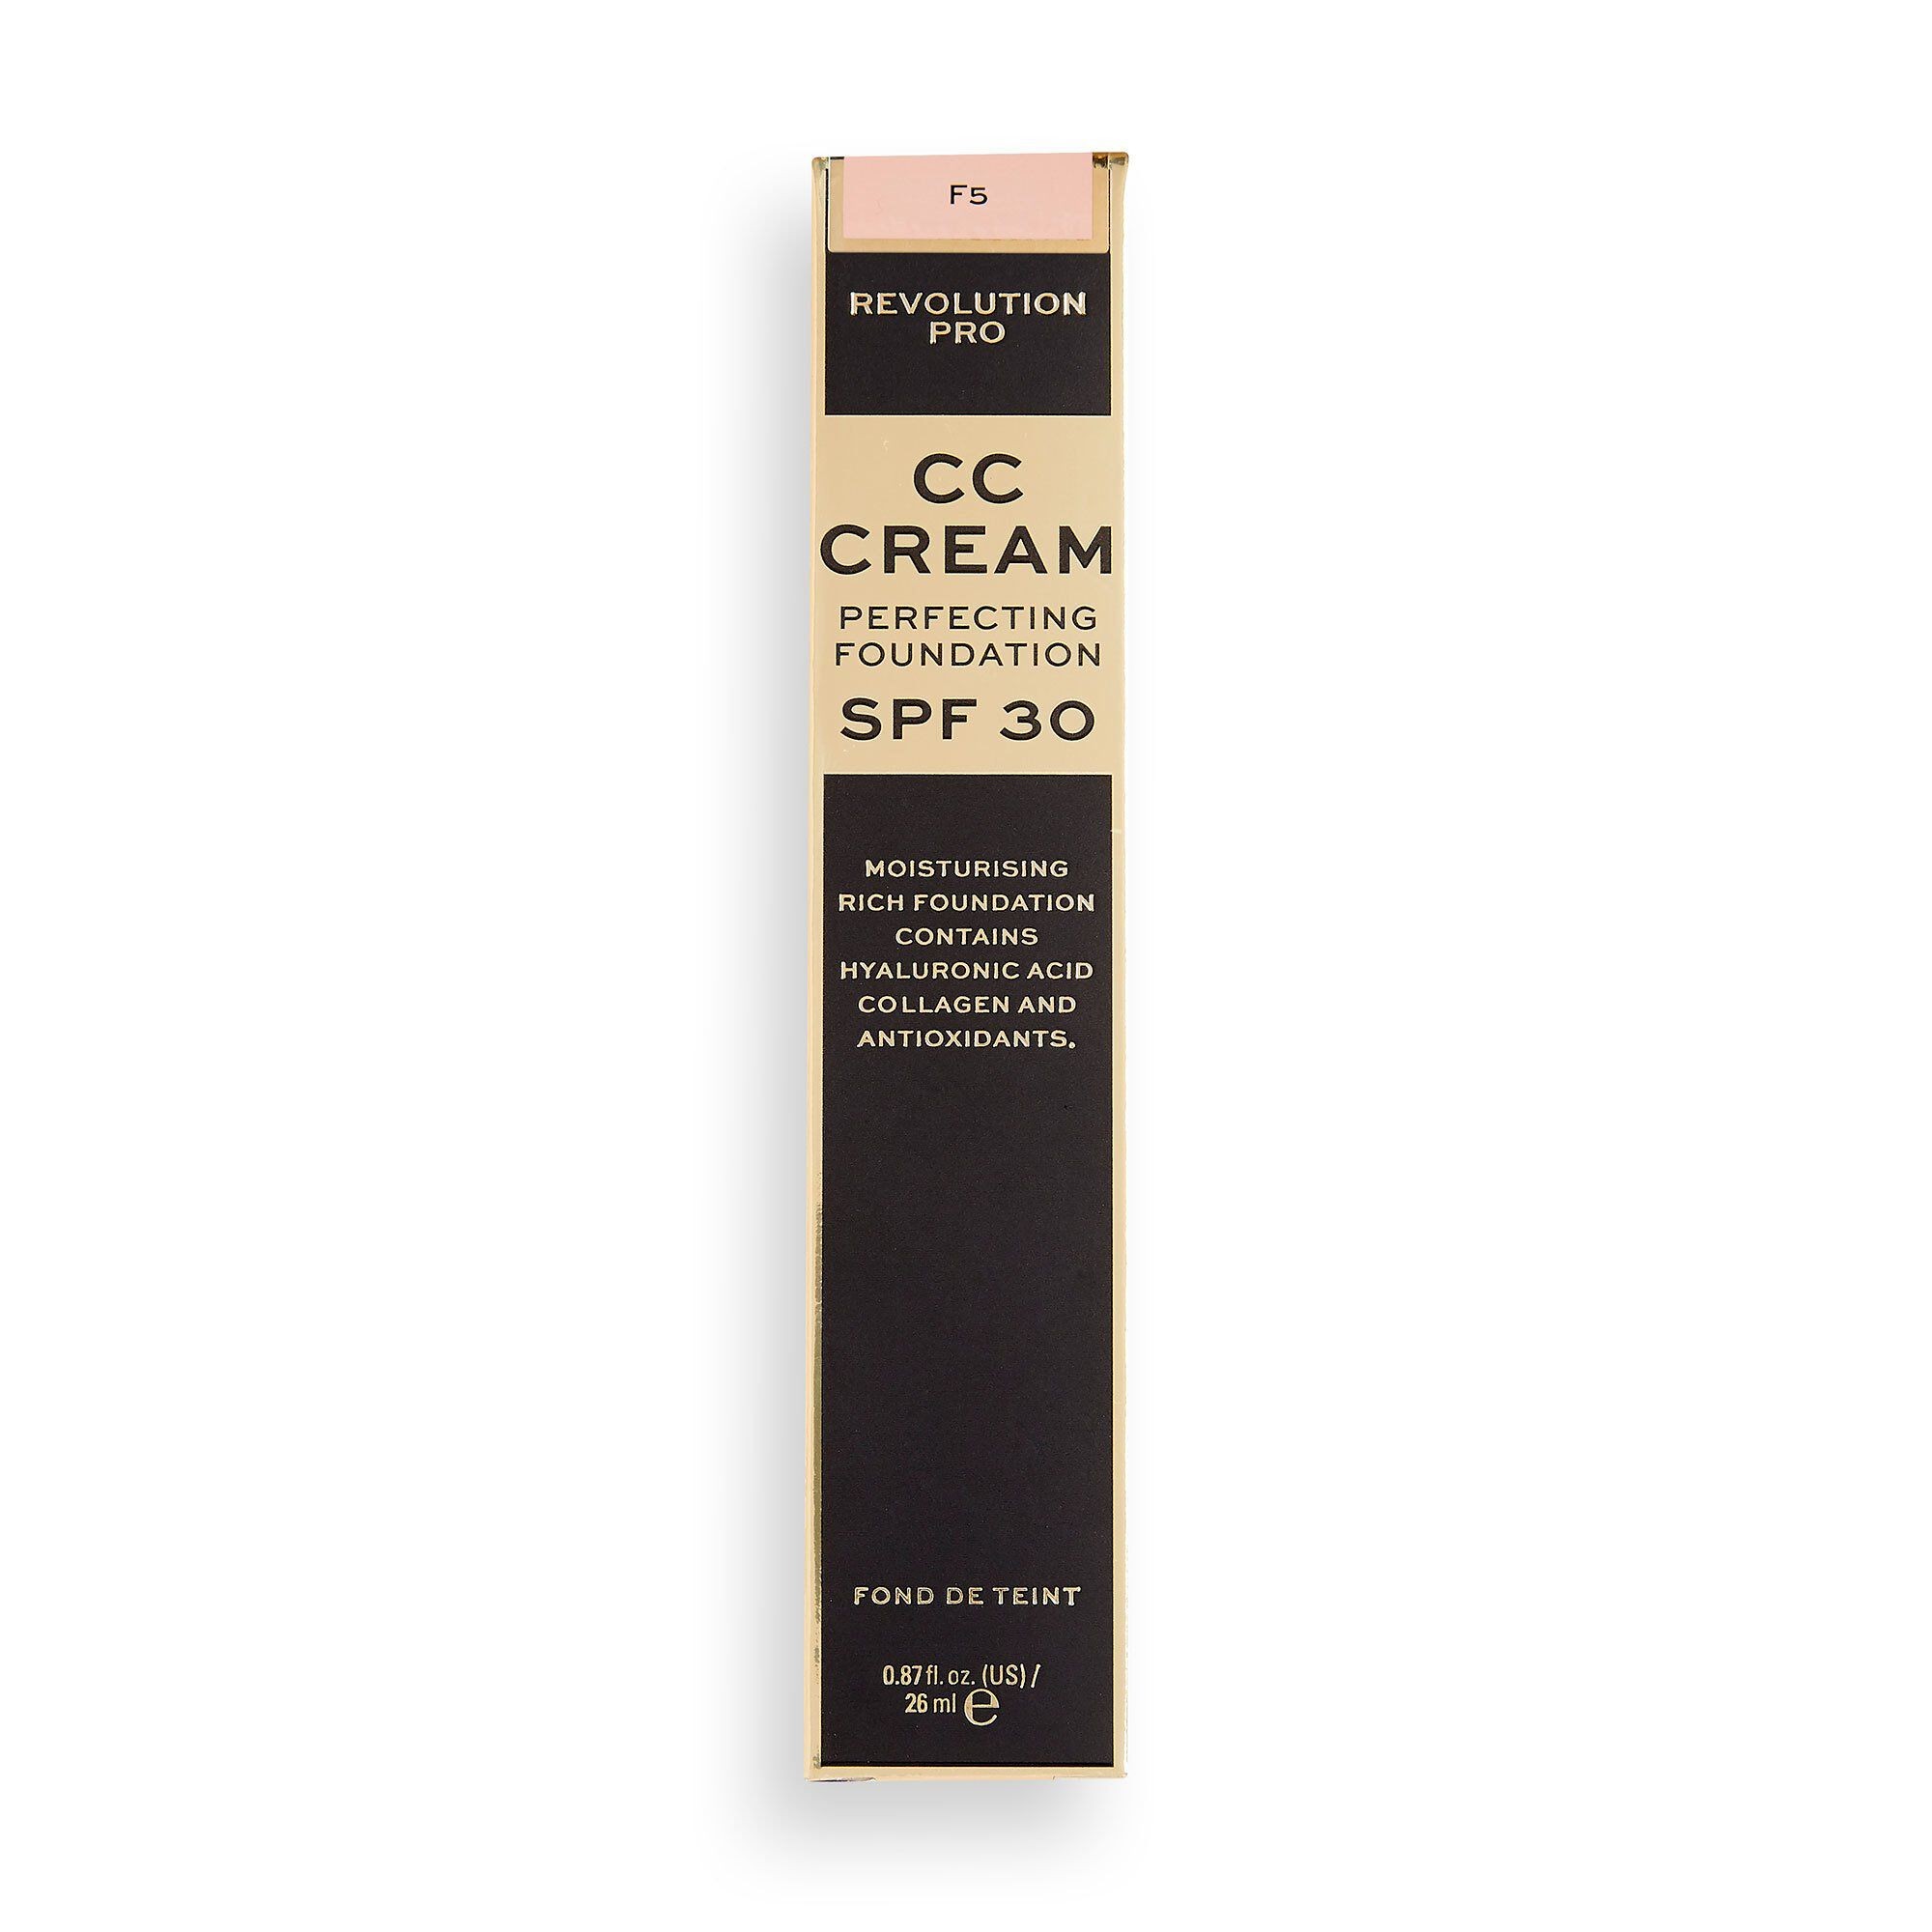 CC Cream - Perfecting Foundation